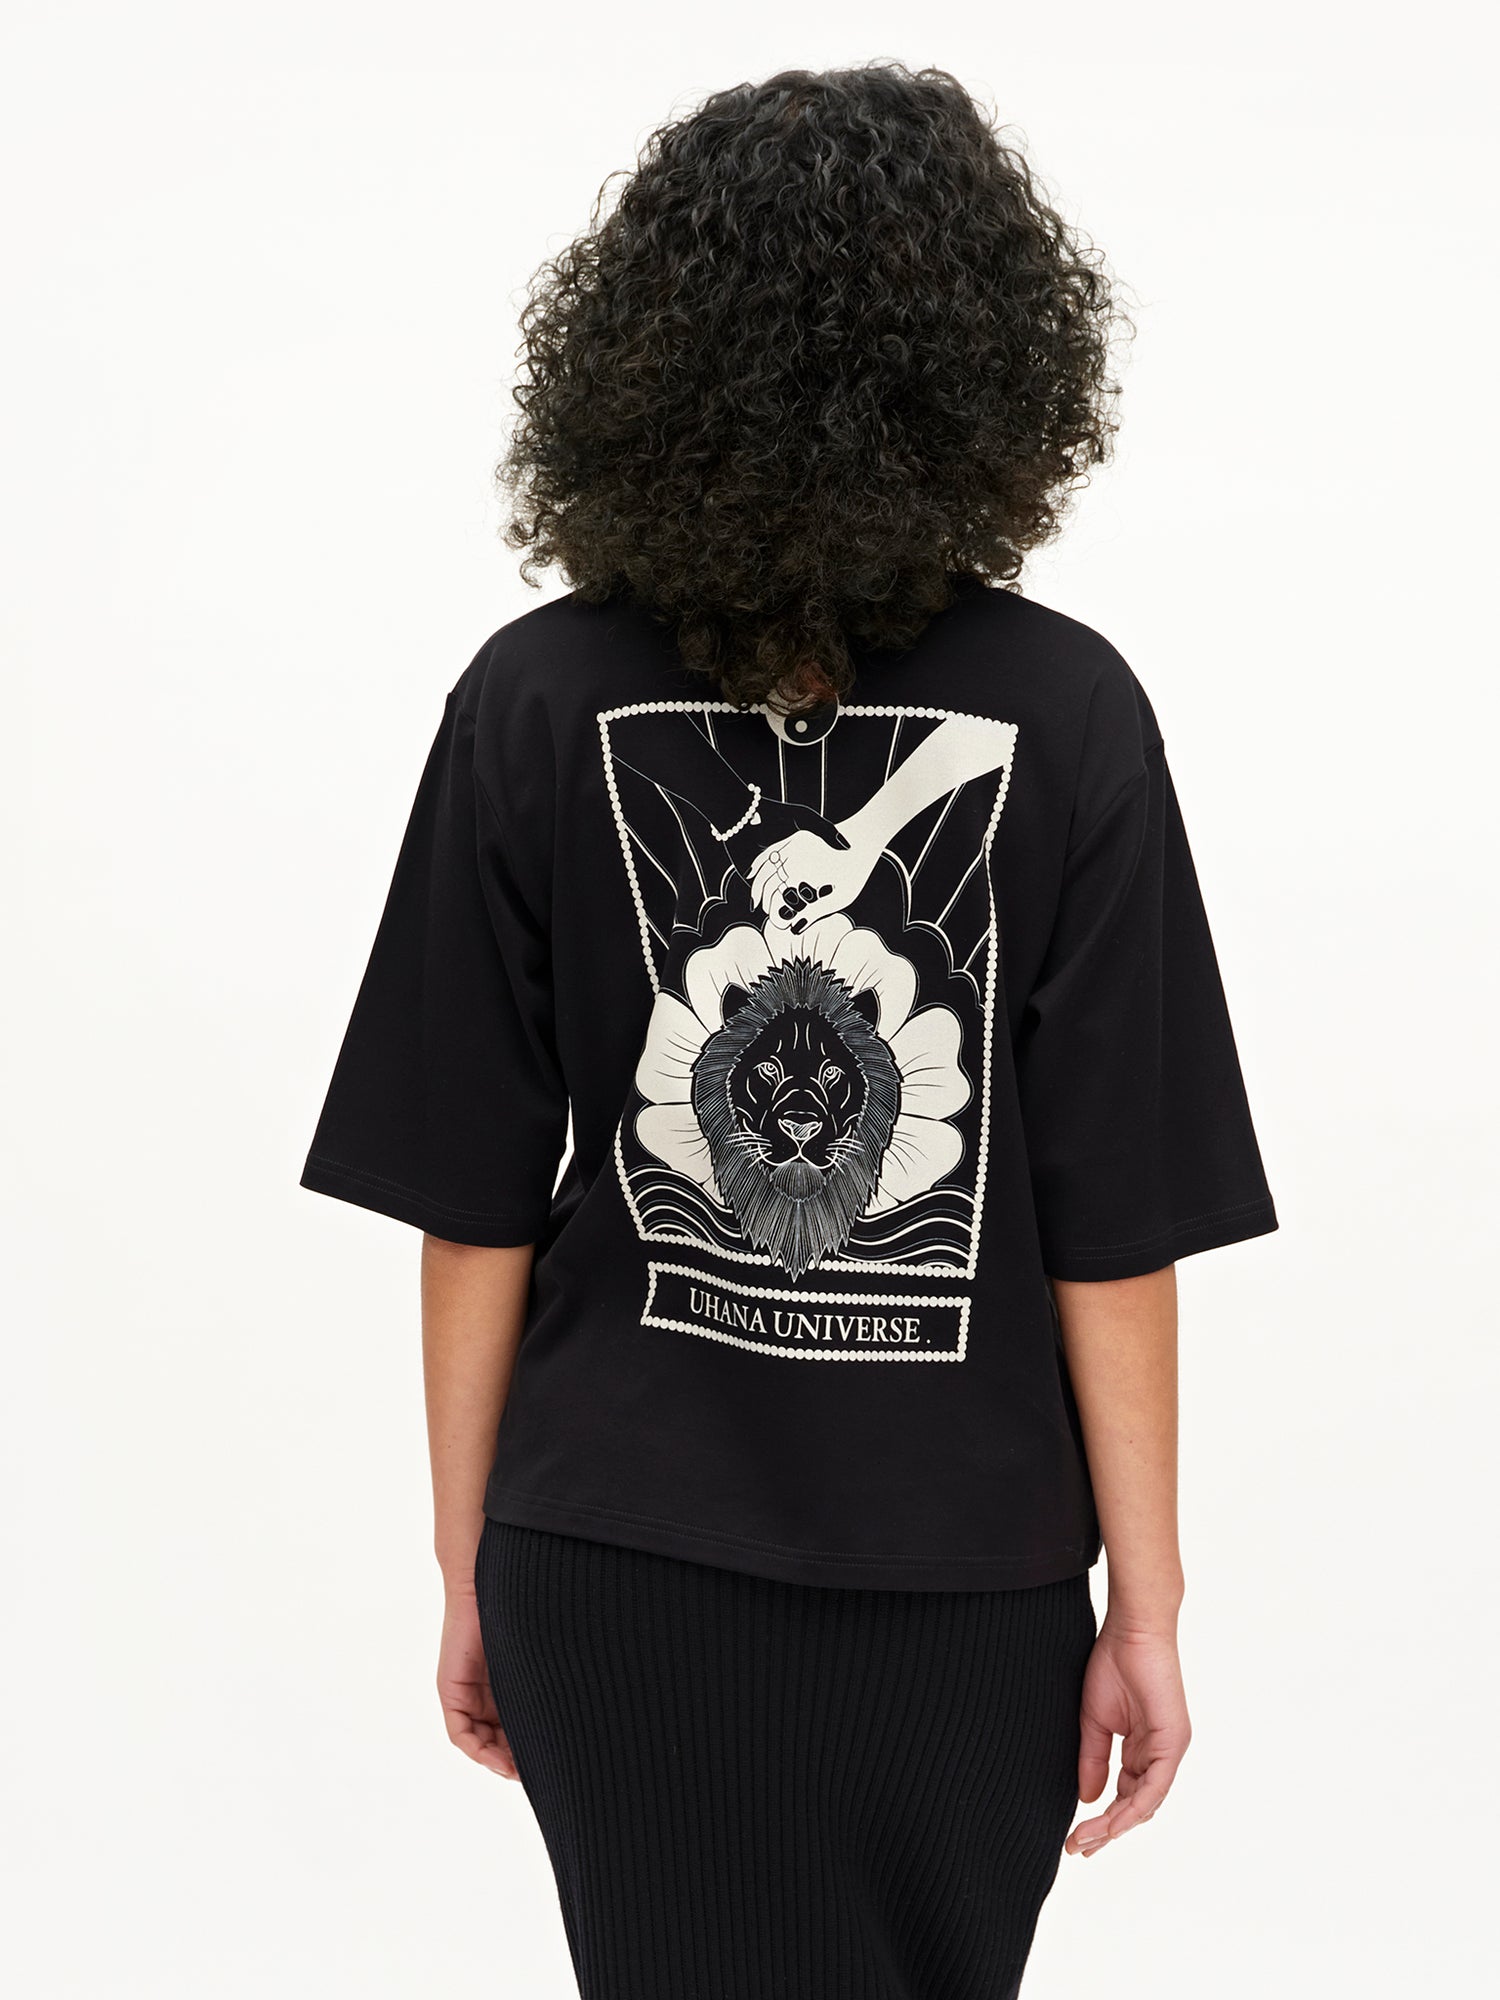 Soul T-shirt, Lionheart Black